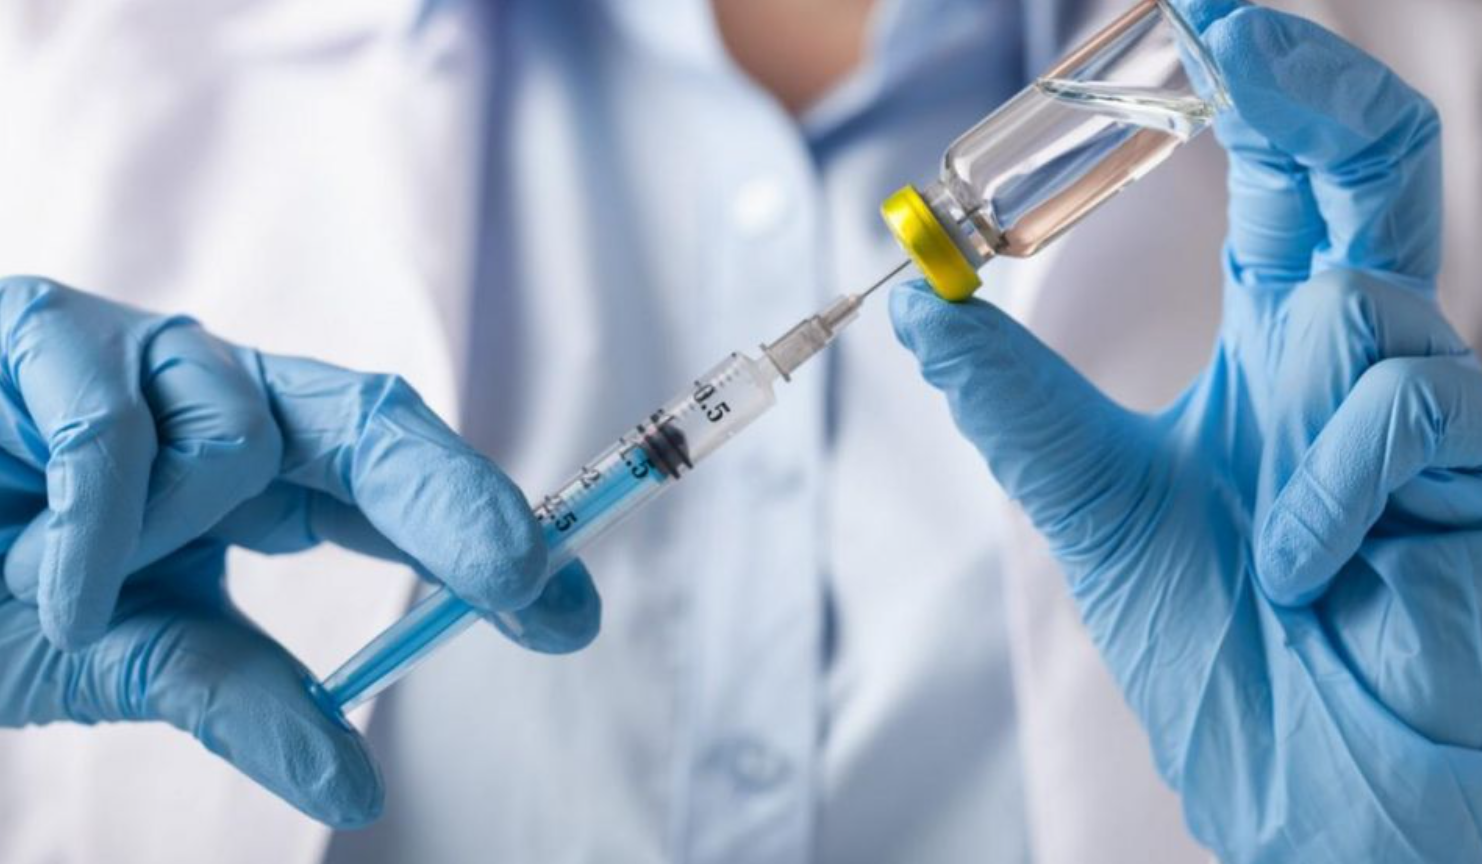 Лечение от коронавируса: в США назвали цену своей вакцины, в РФ заявили, что их «значительно дешевле» - фото 1